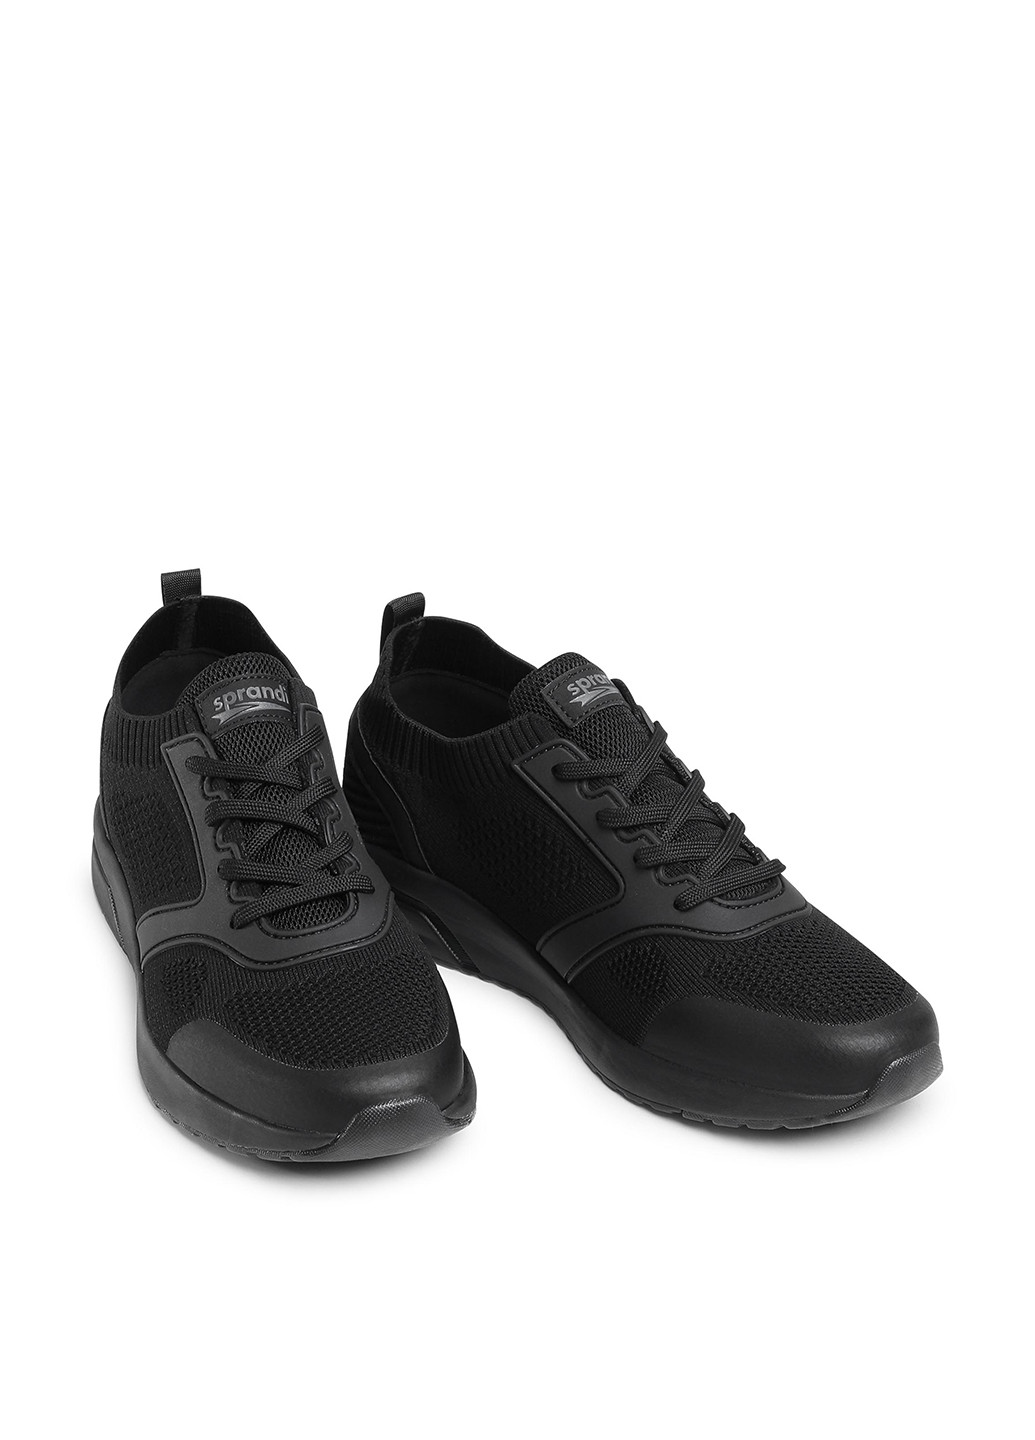 Черные демисезонные кросівки mp07-01430-02 Sprandi